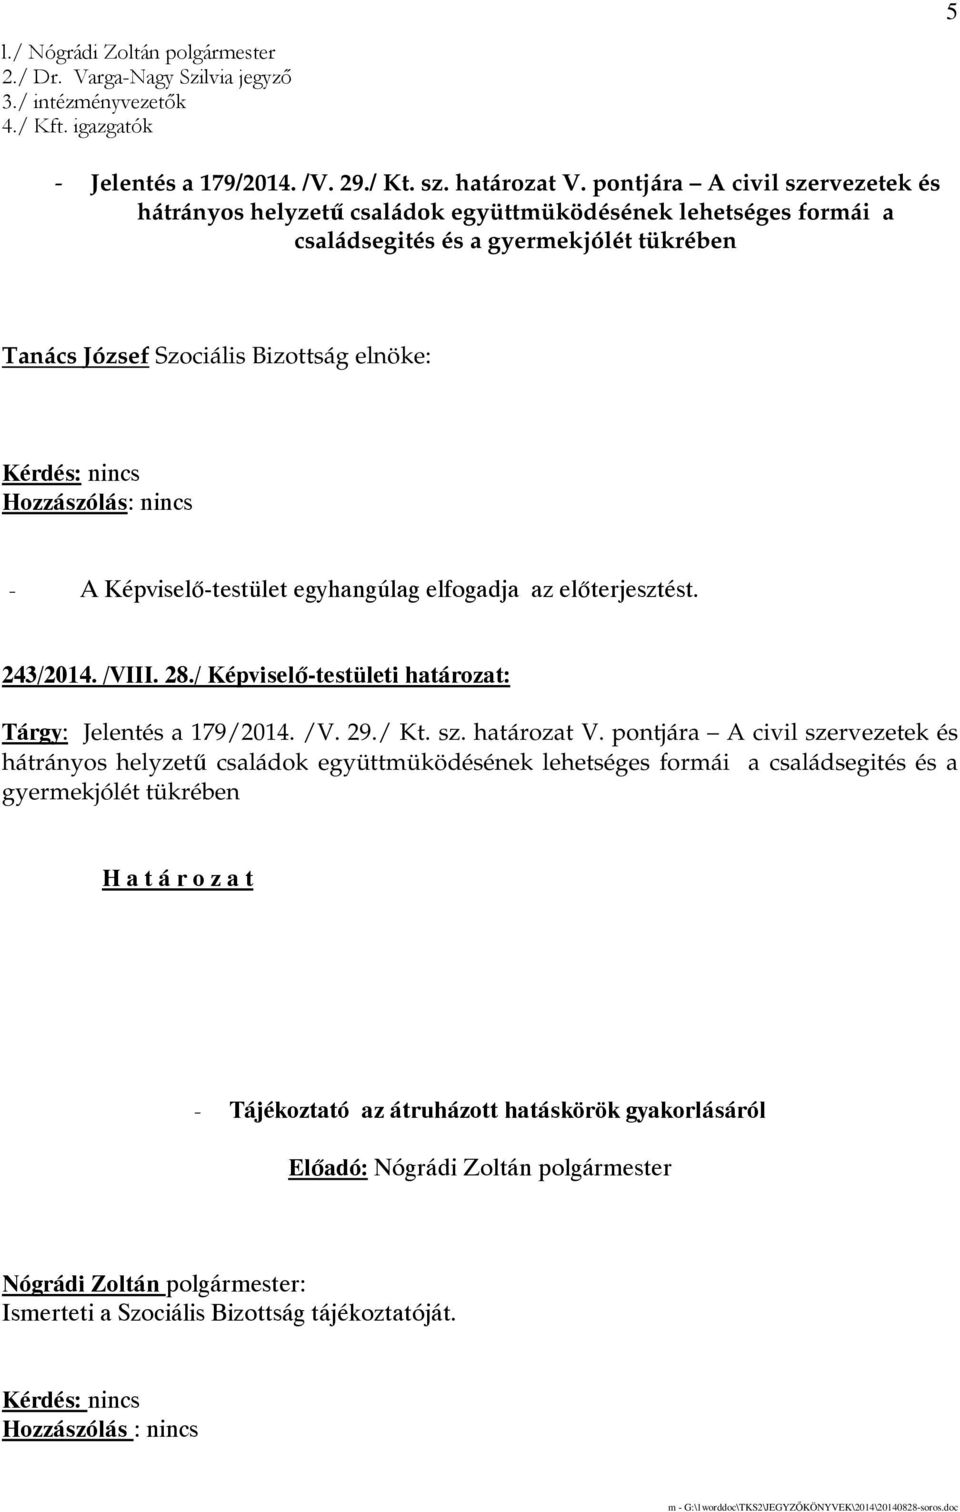 243/2014. /VIII. 28./ Képviselı-testületi határozat: Tárgy: Jelentés a 179/2014. /V. 29./ Kt. sz. határozat V.